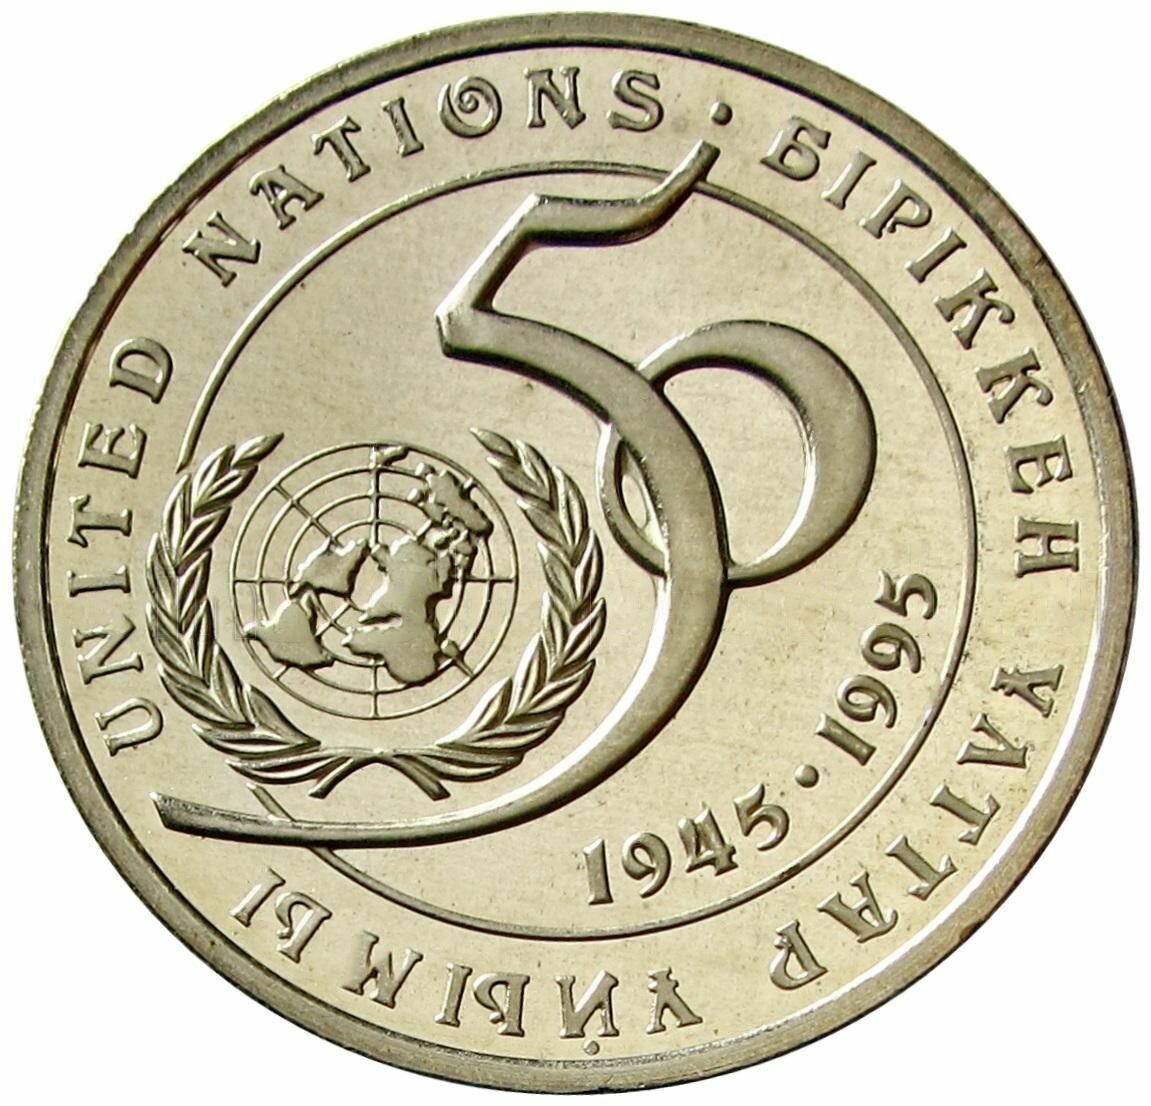 20 тенге 1995 Казахстан, ООН 50 лет, Proof